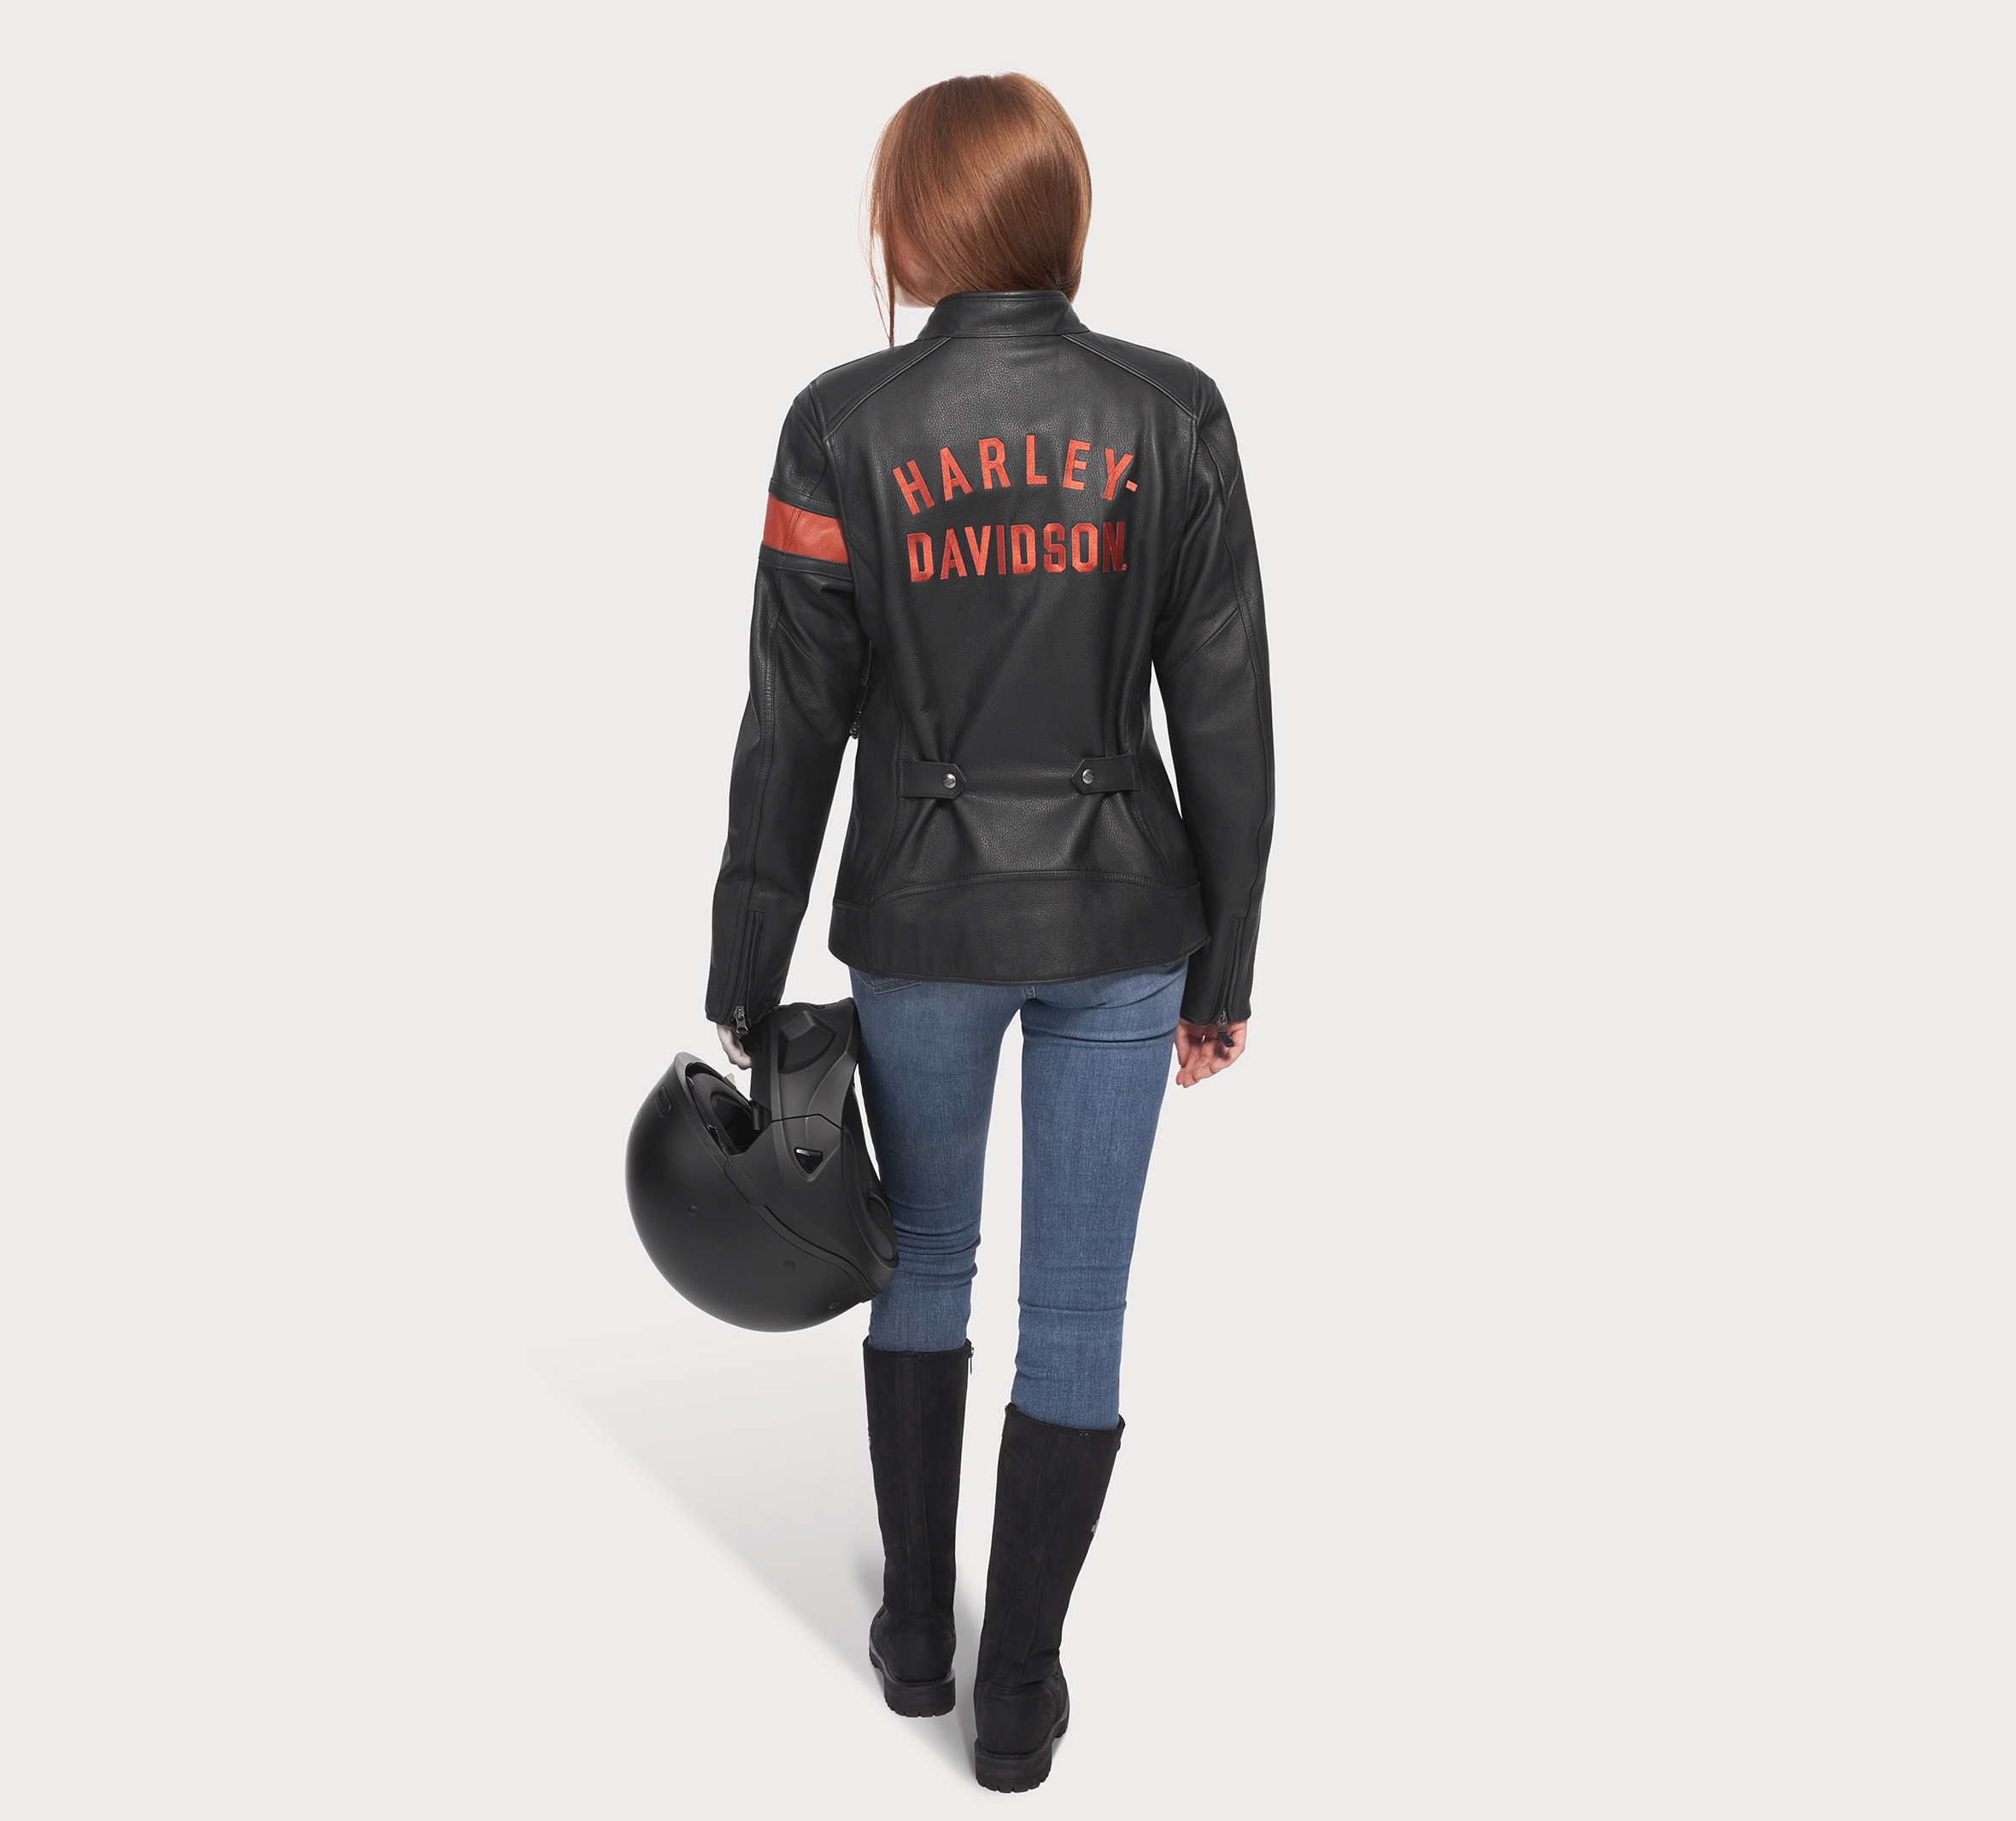 Harley Davidson leather jacket bdce.unb.br